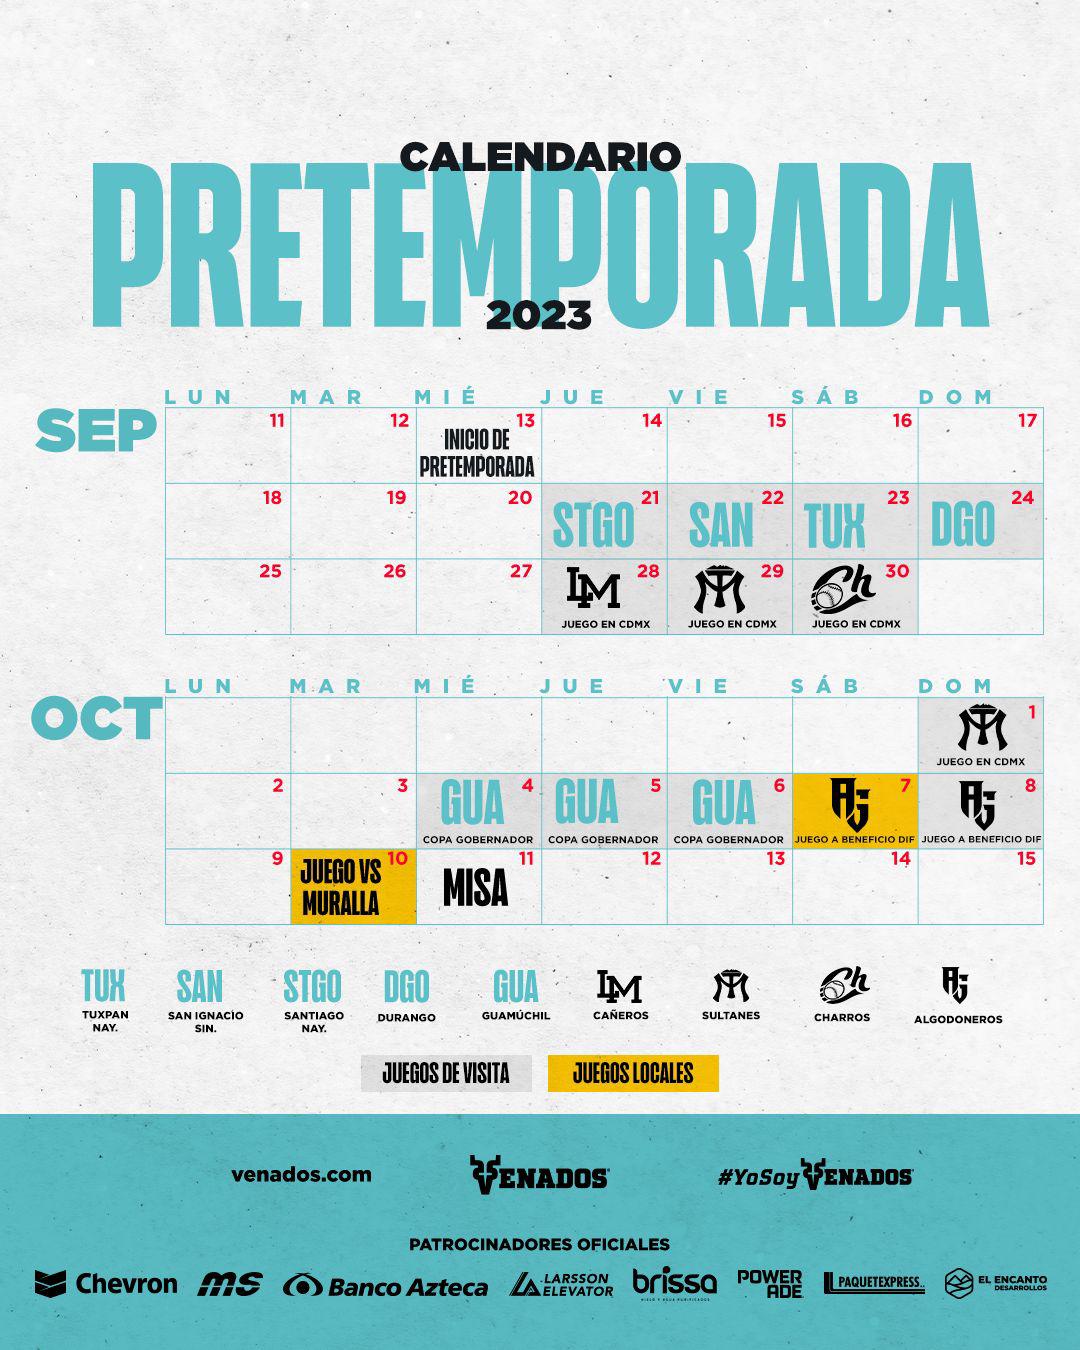 $!Venados de Mazatlán destapa calendario de juegos de pretemporada